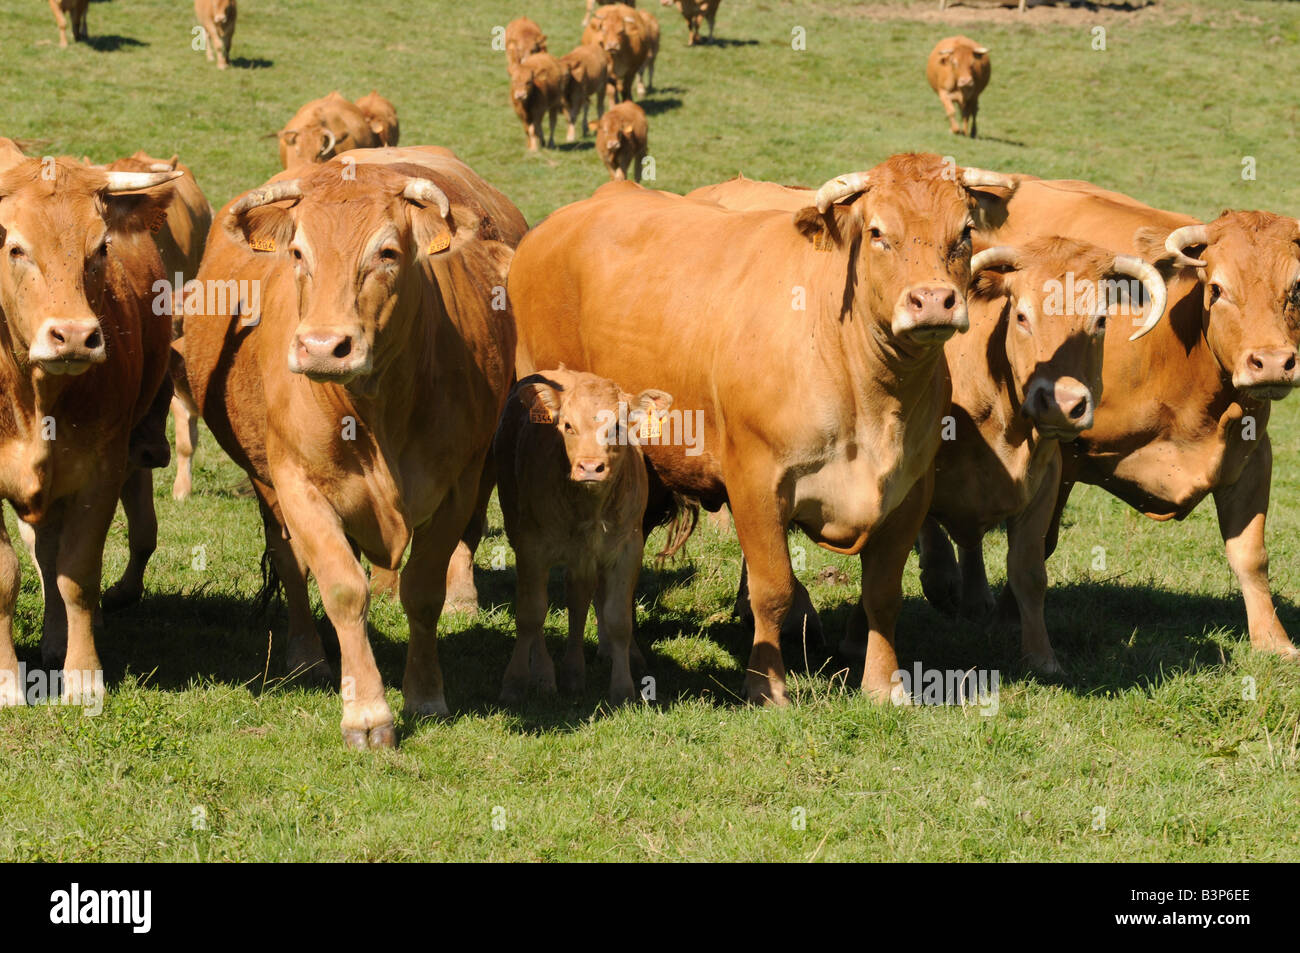 Eine Herde Kühe in Correze, zentralen Region von Frankreich berühmt für seine Kühe Fleischqualität. Diese Kühe werden als Limousinen bezeichnet. Stockfoto